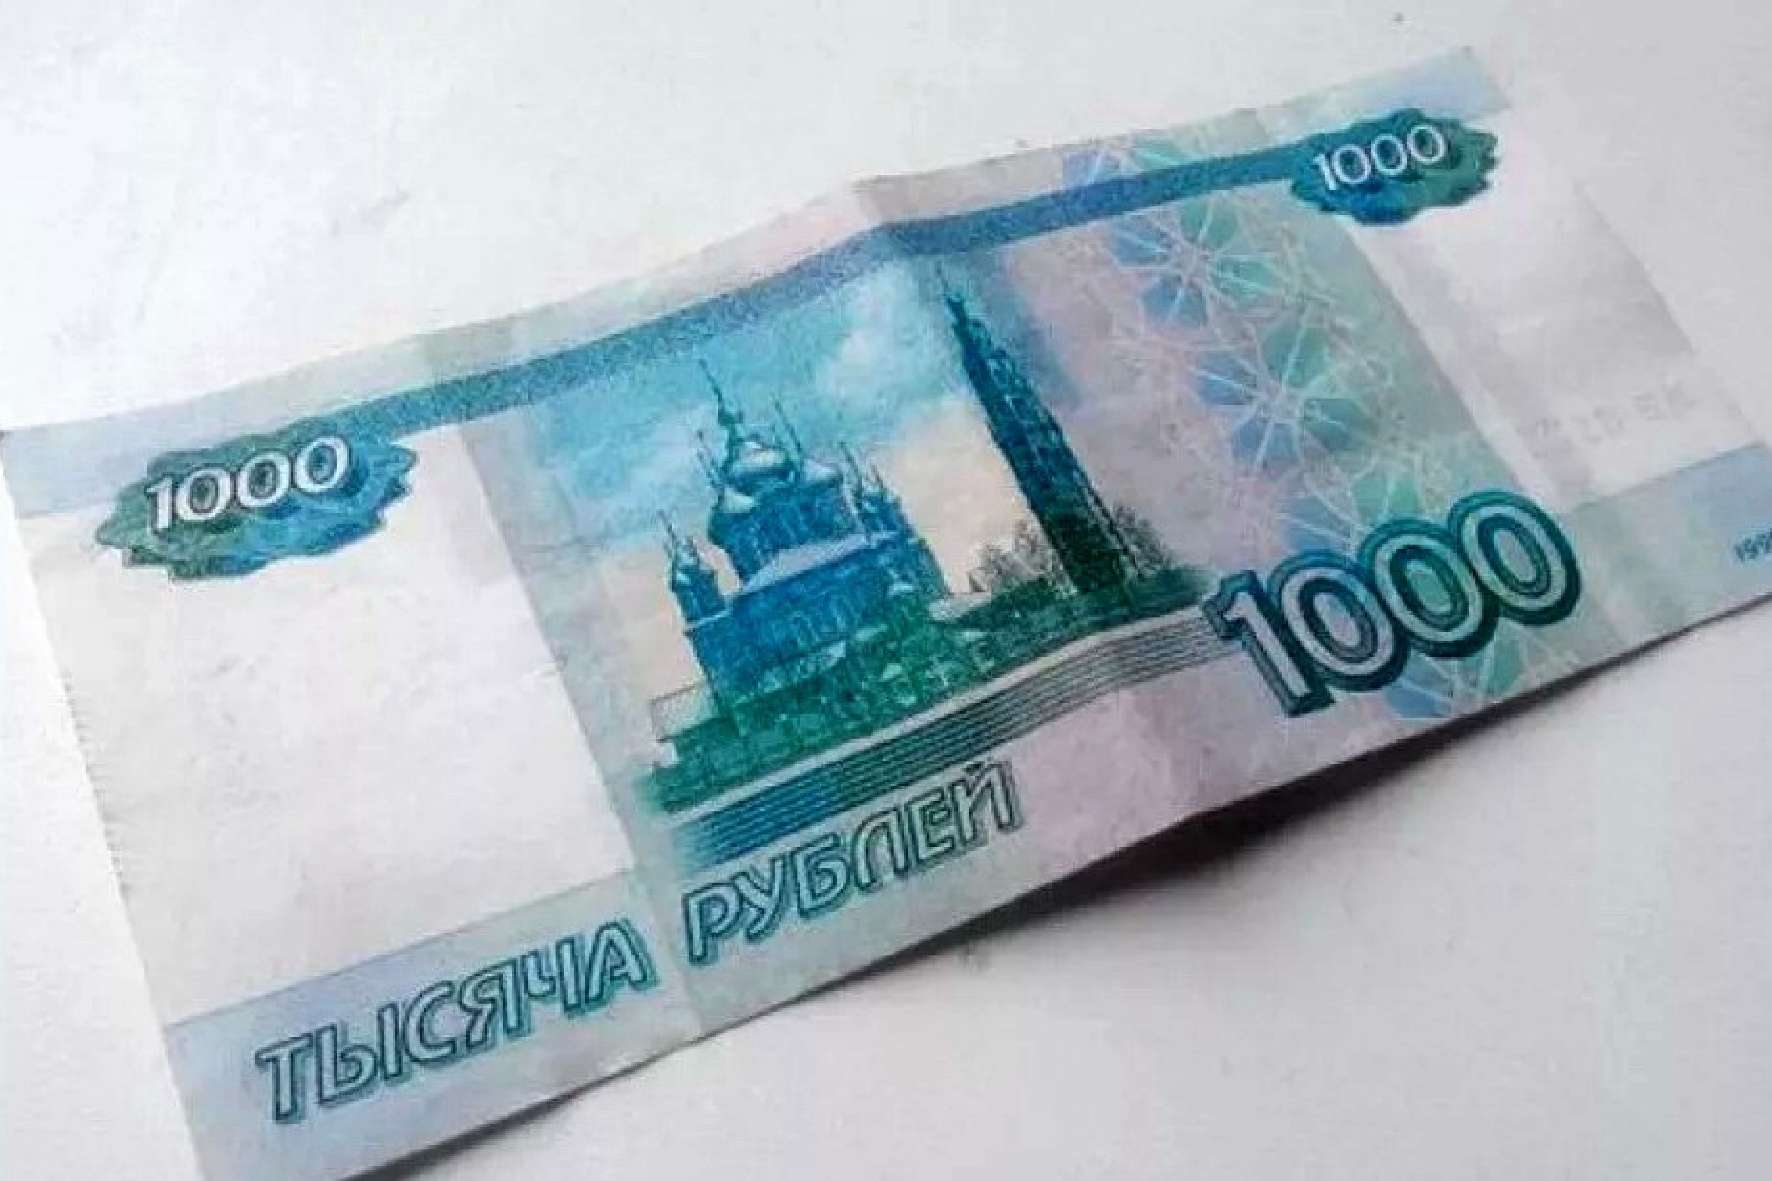 1000 1 ру. 1000 Рублей. Купюра 1000 рублей. Банкнота 1000 рублей. 1000 Рублей изображение.